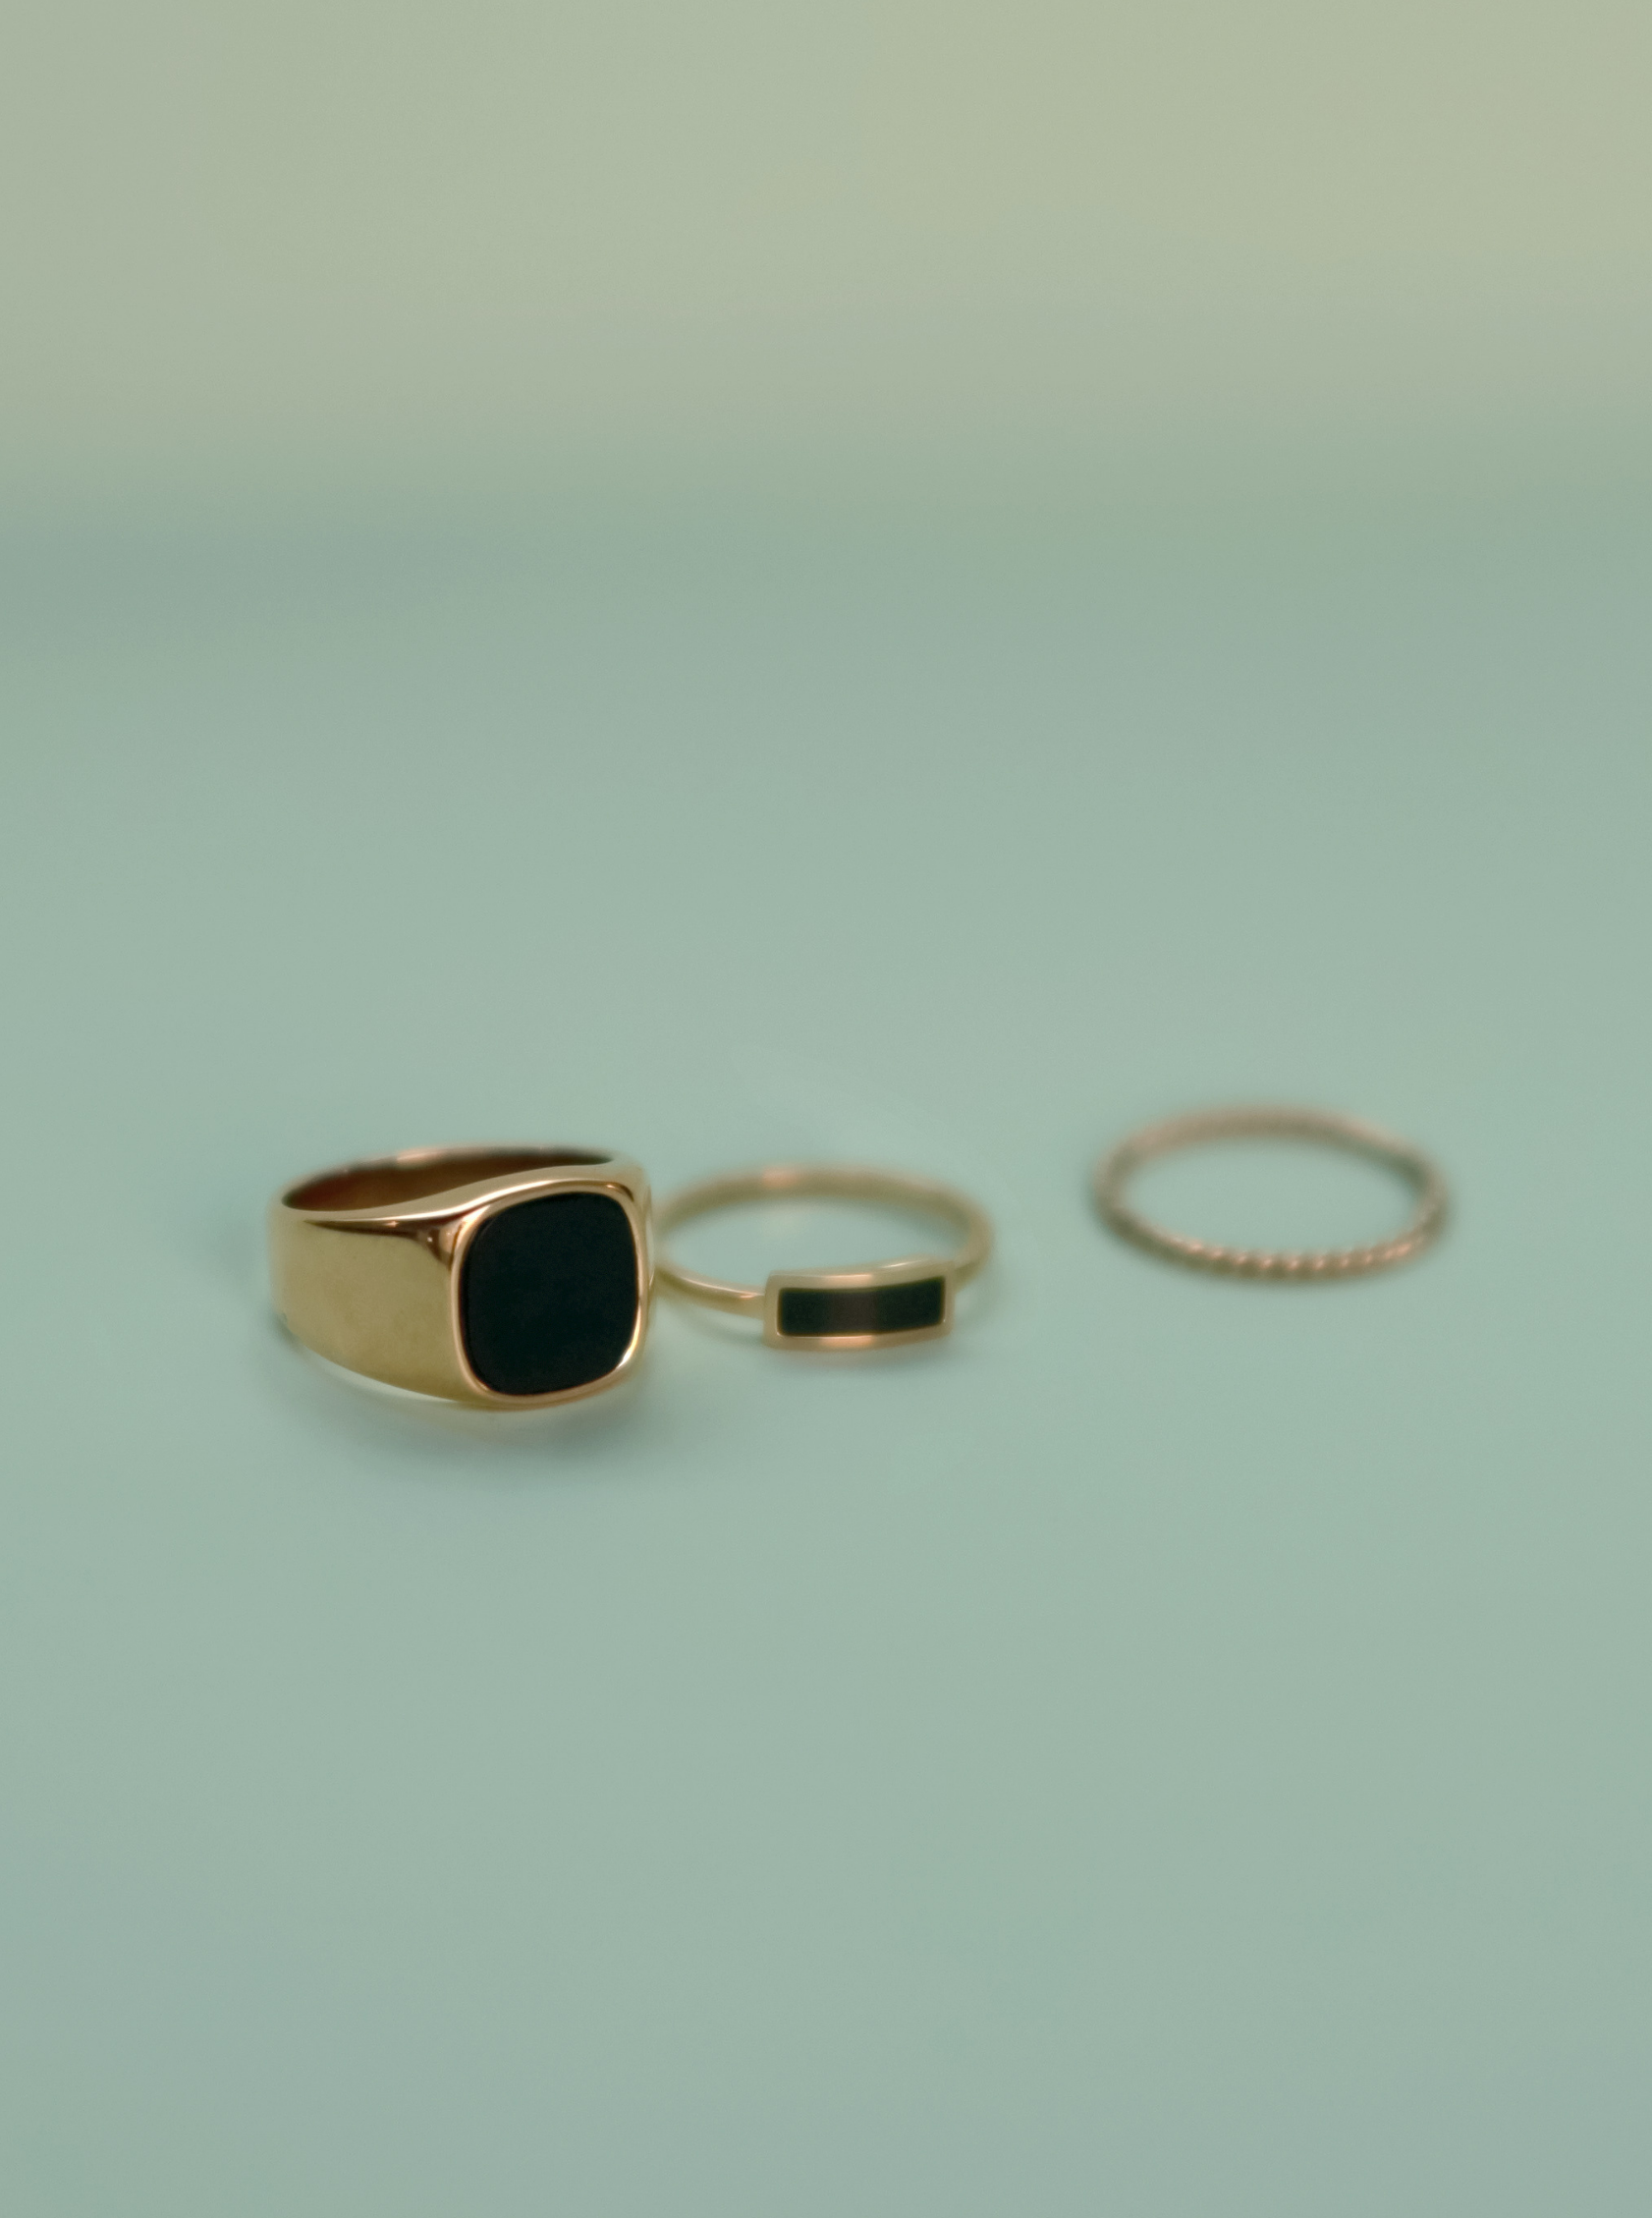 14k Gold Black Onyx Ring Set